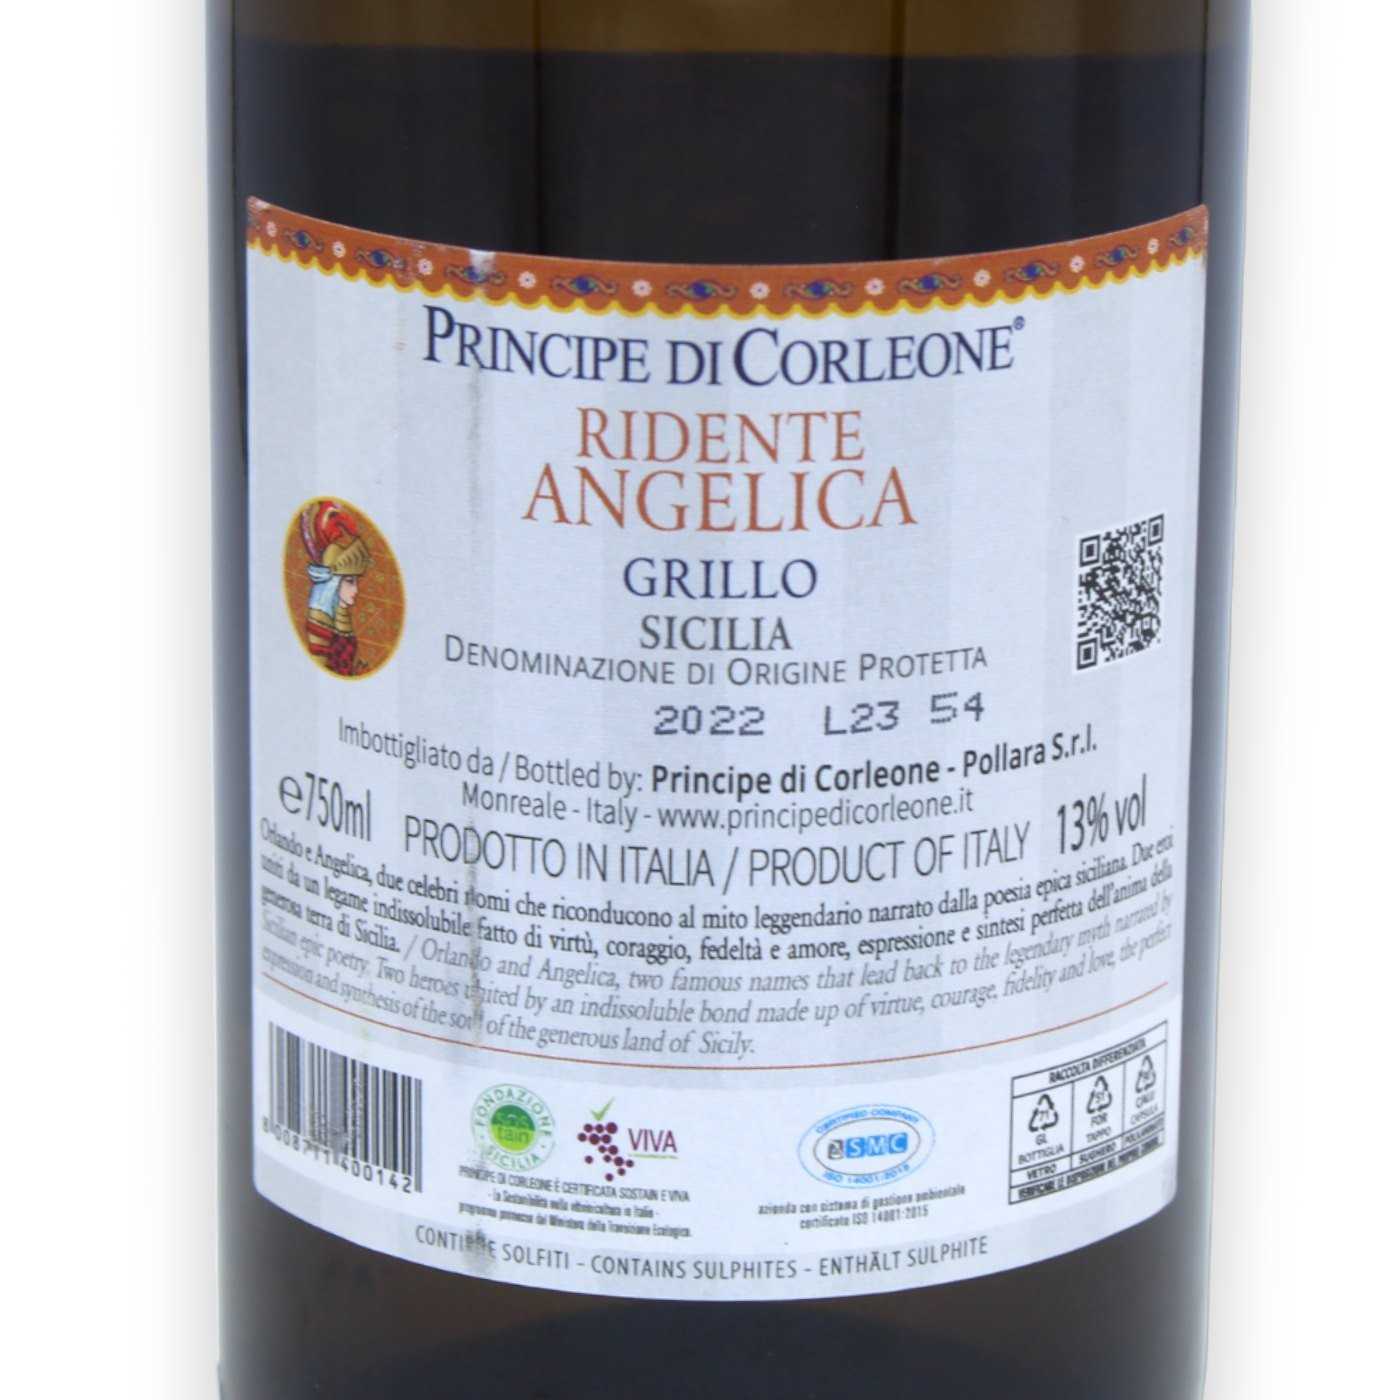 Weißwein 13% Grillo Angelica ml Vol. DOP Ridente - 750 -